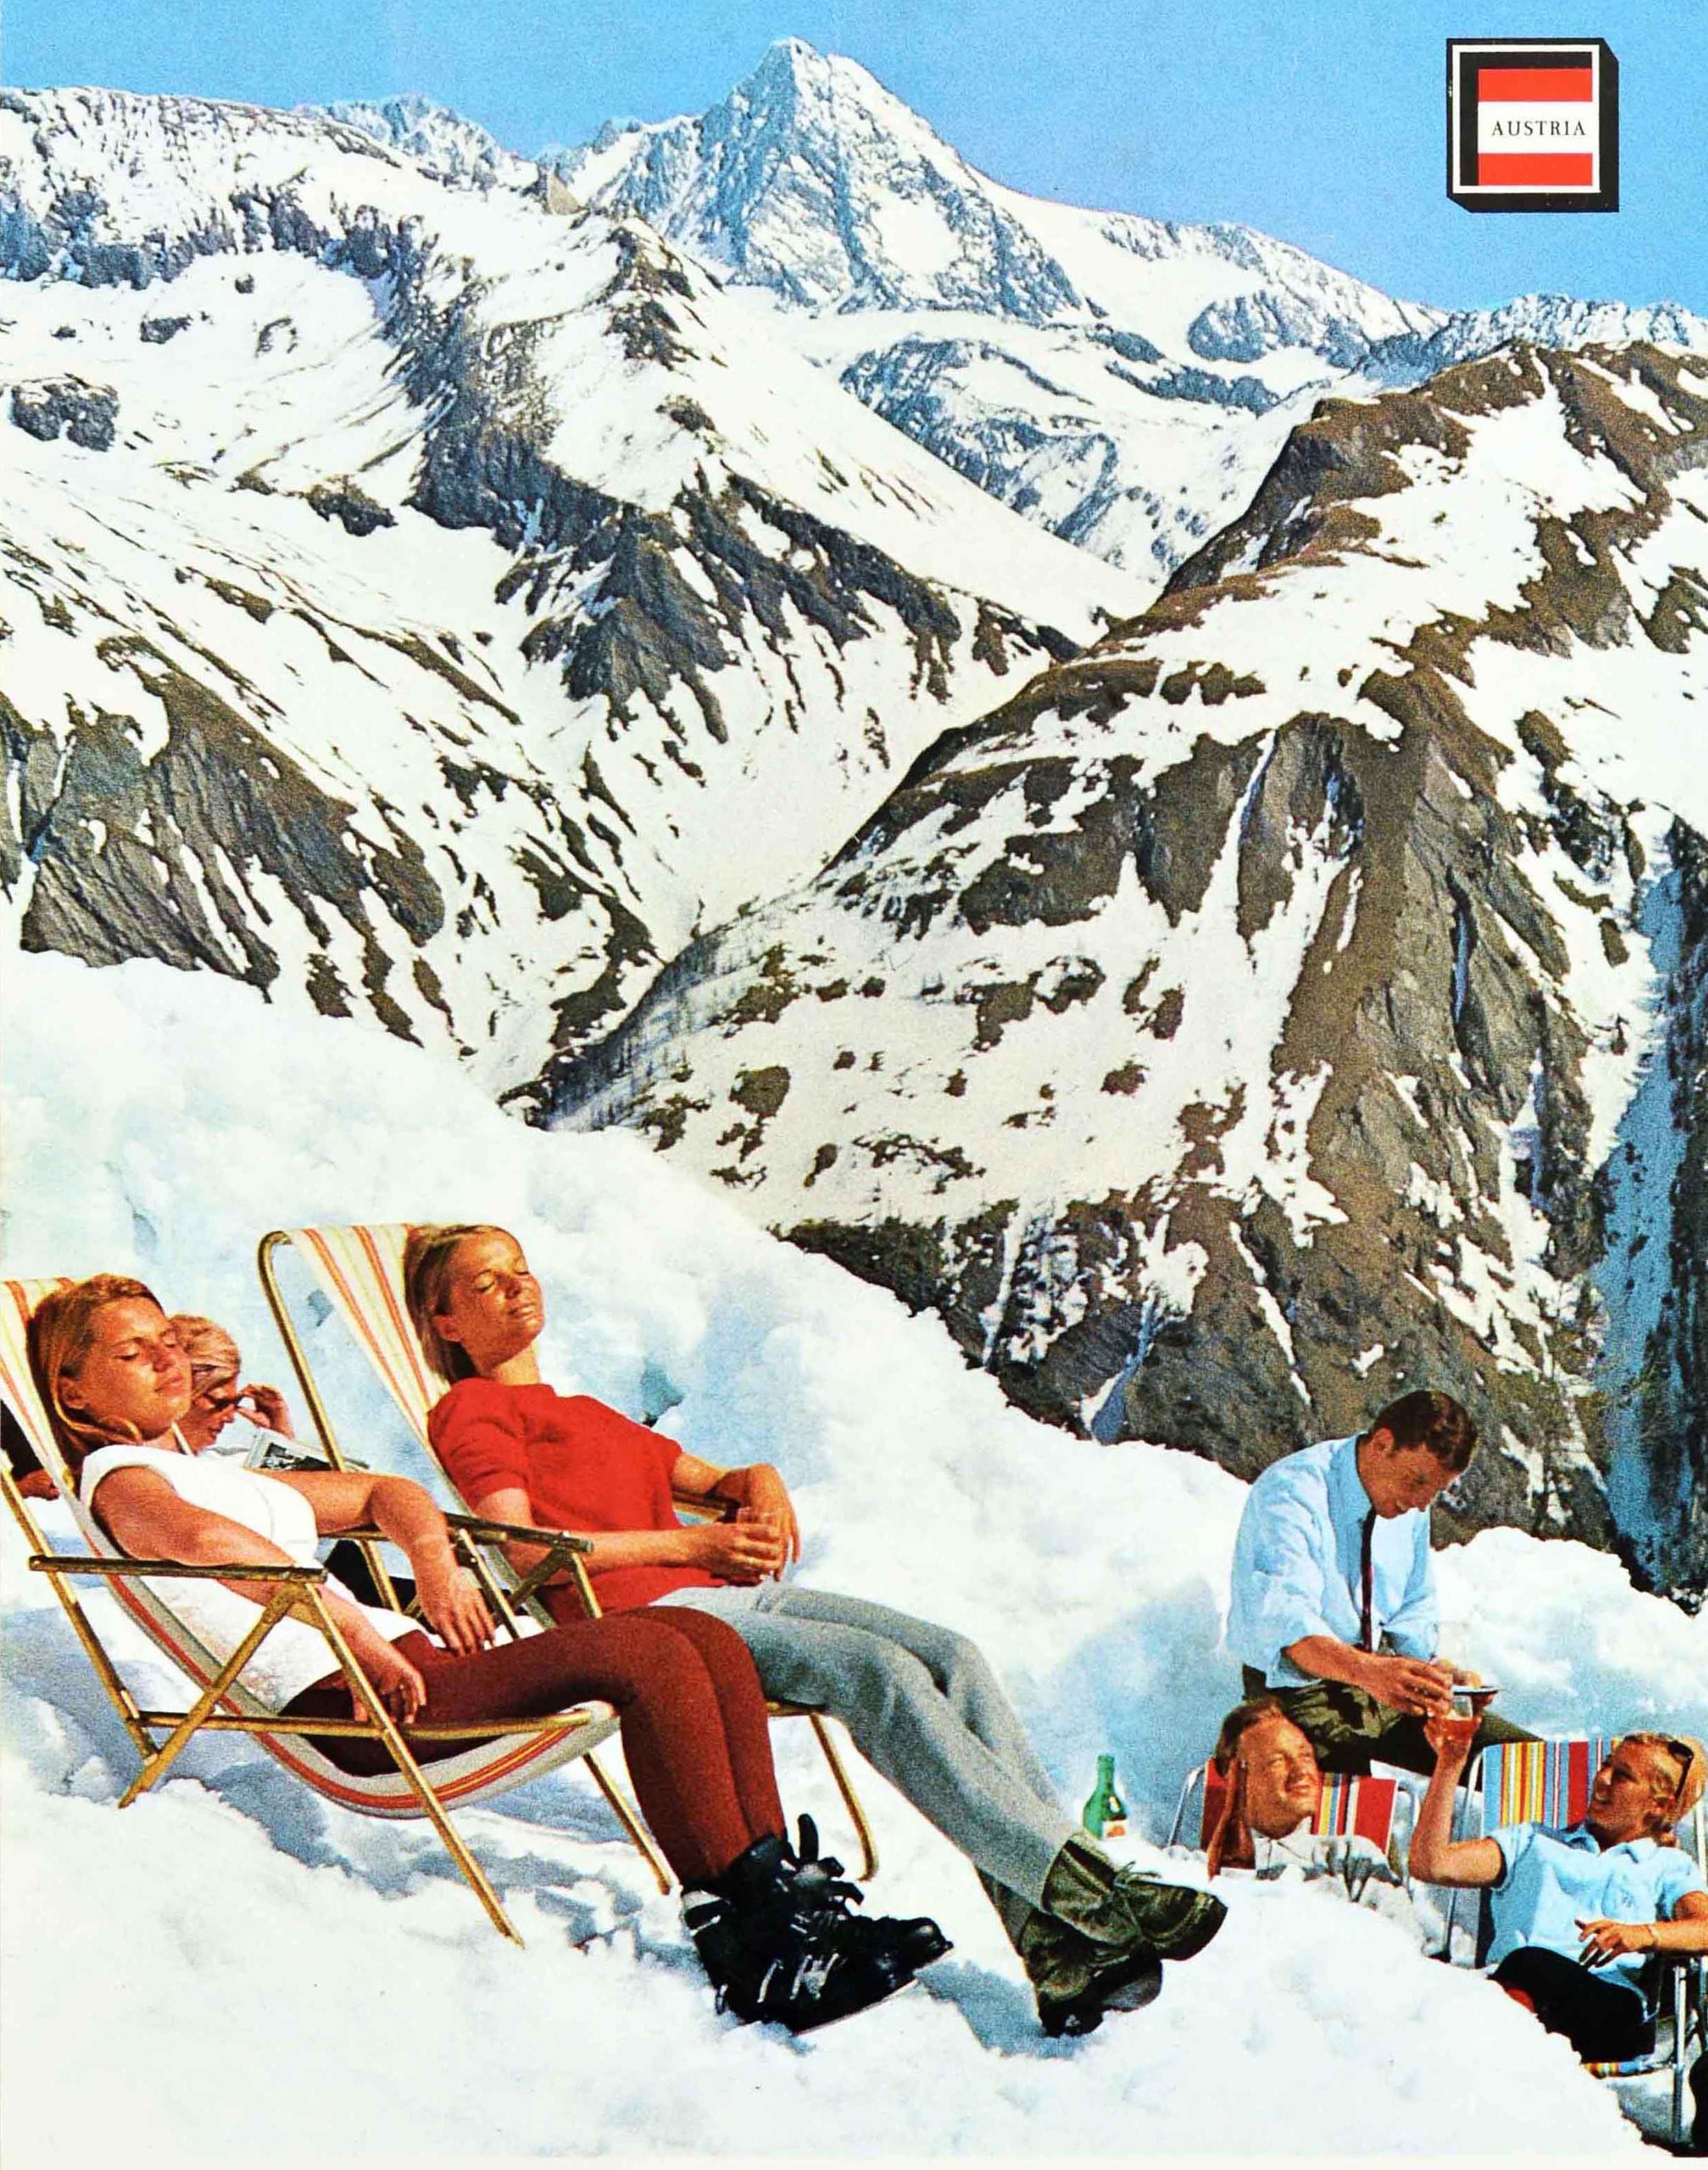 Austrian Original Vintage Winter Travel Poster Osterreich Austria Skiing Sunbathing Photo For Sale